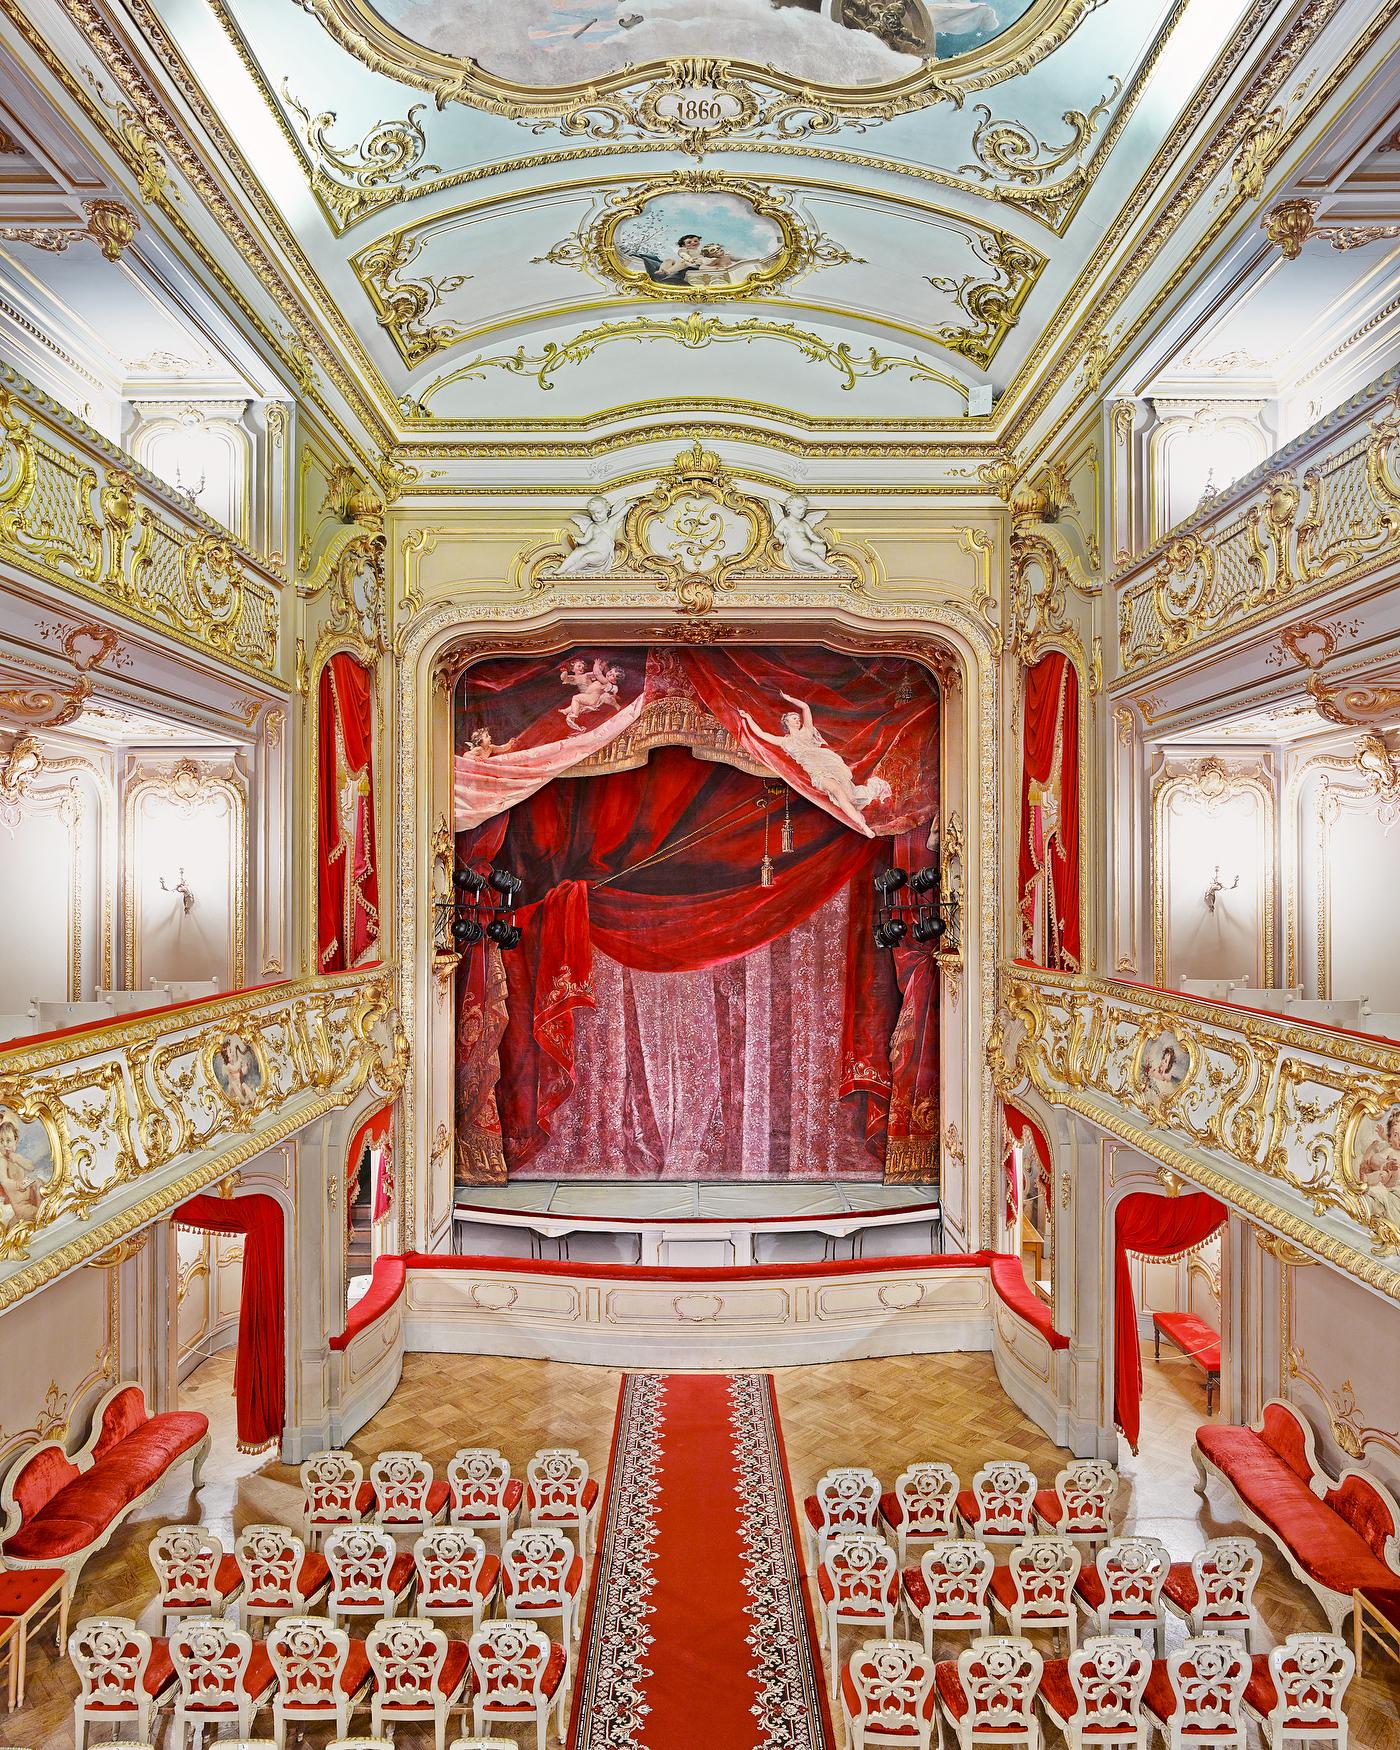 Yusopf Theatre Curtain, St Petersburg, Russia (44” x 55”)